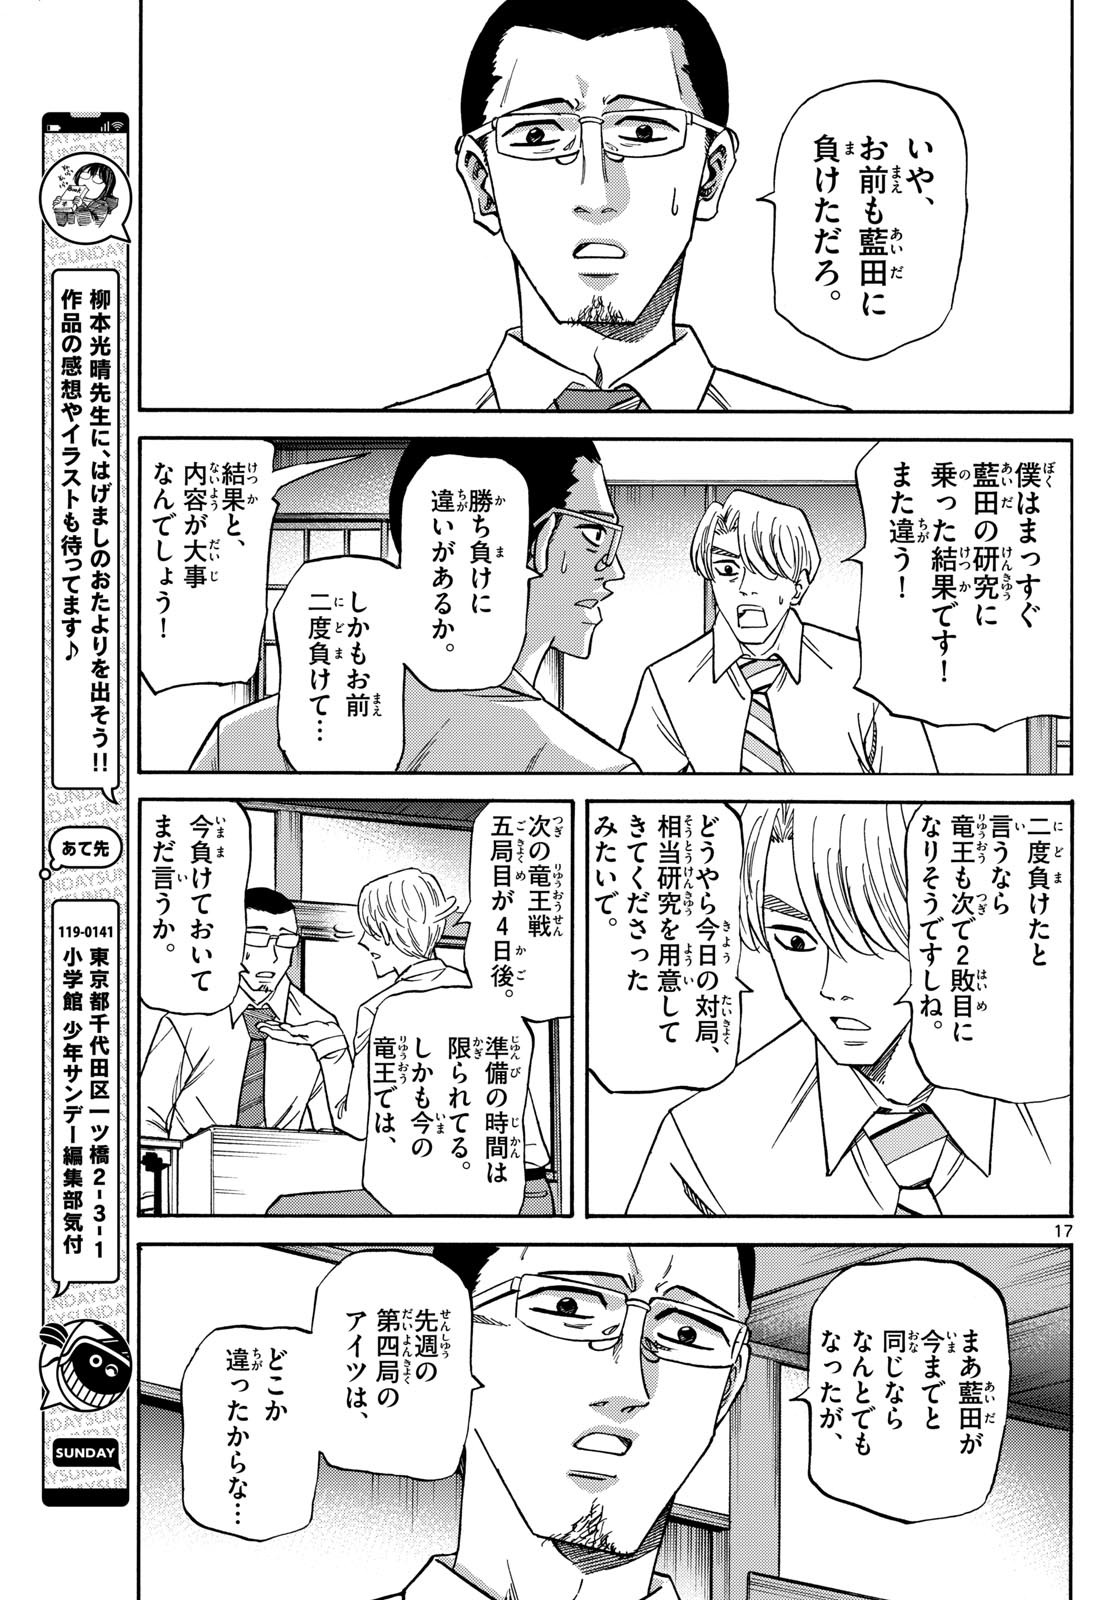 Ryu-to-Ichigo - Chapter 164 - Page 17